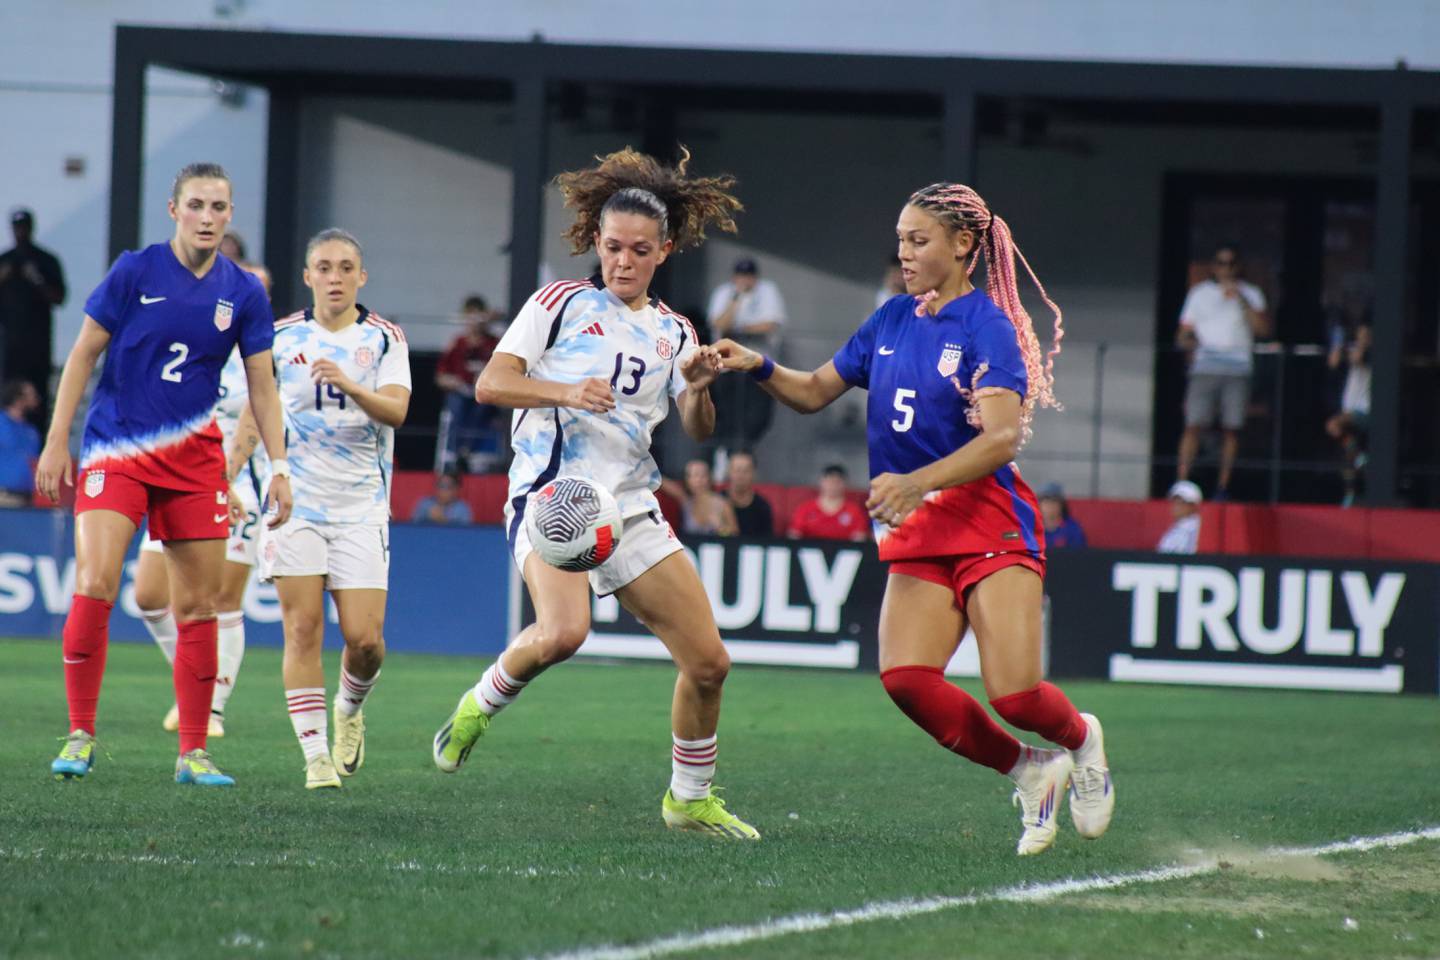 La Selección femenina de Costa Rica batalló en defensa para amarrar el primer empate de su historia. Foto: Fedefútbol.